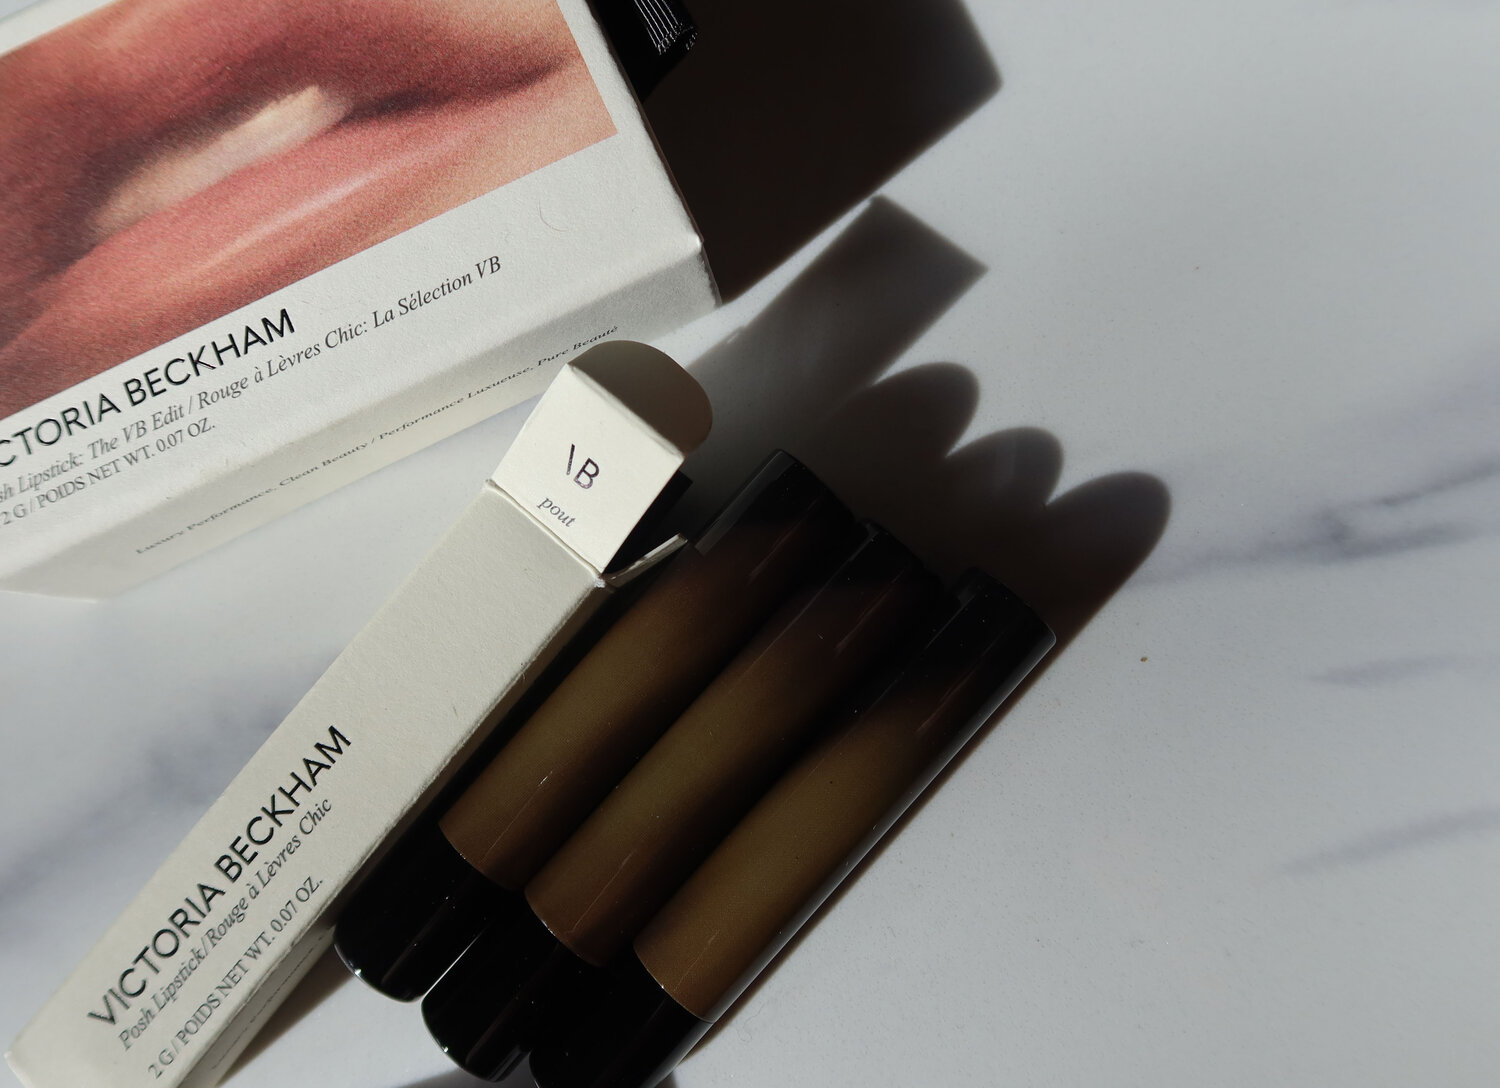 Victoria Beckham Beauty lipsticks